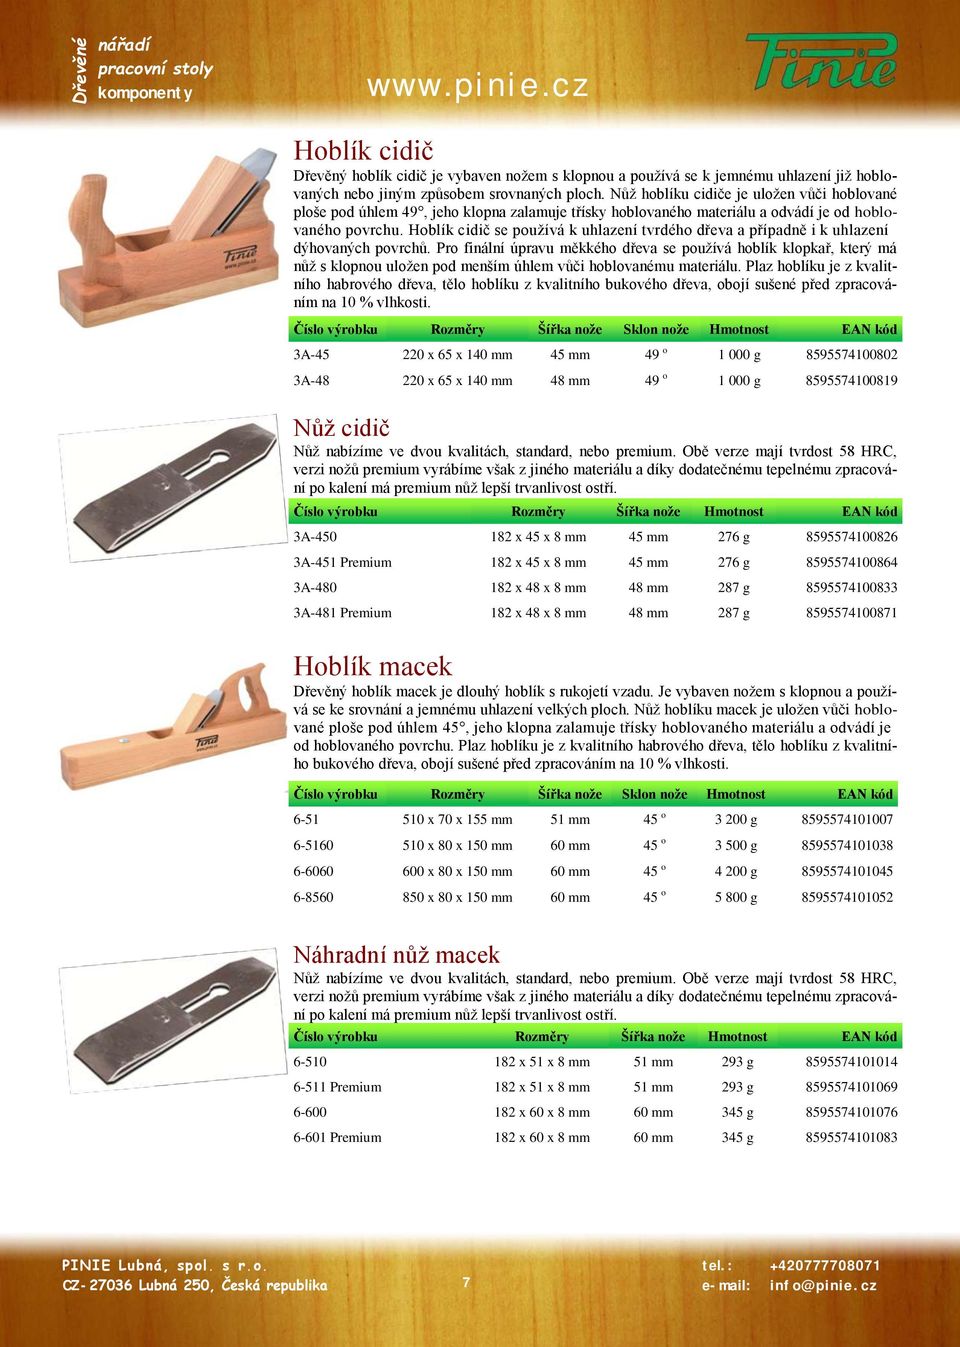 Hoblík cidič se používá k uhlazení tvrdého dřeva a případně i k uhlazení dýhovaných povrchů.